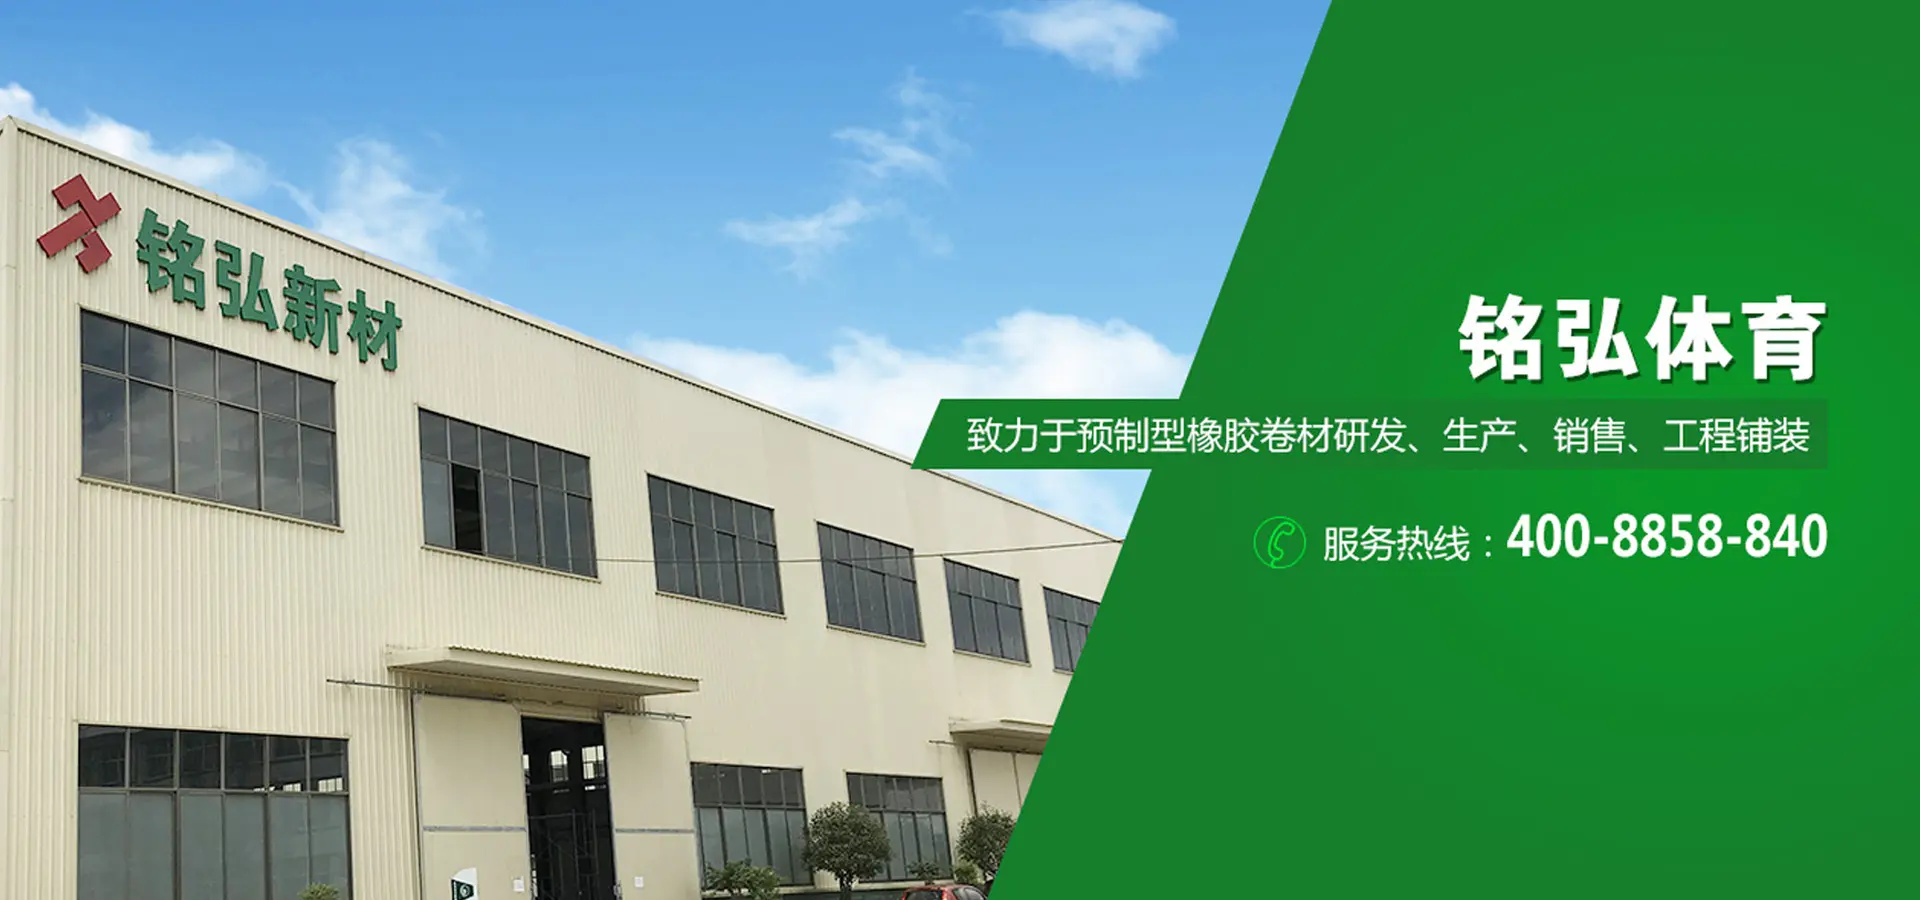 湖南铭弘体育产业股份有限公司关于处置一批人造草生产设备的询价函